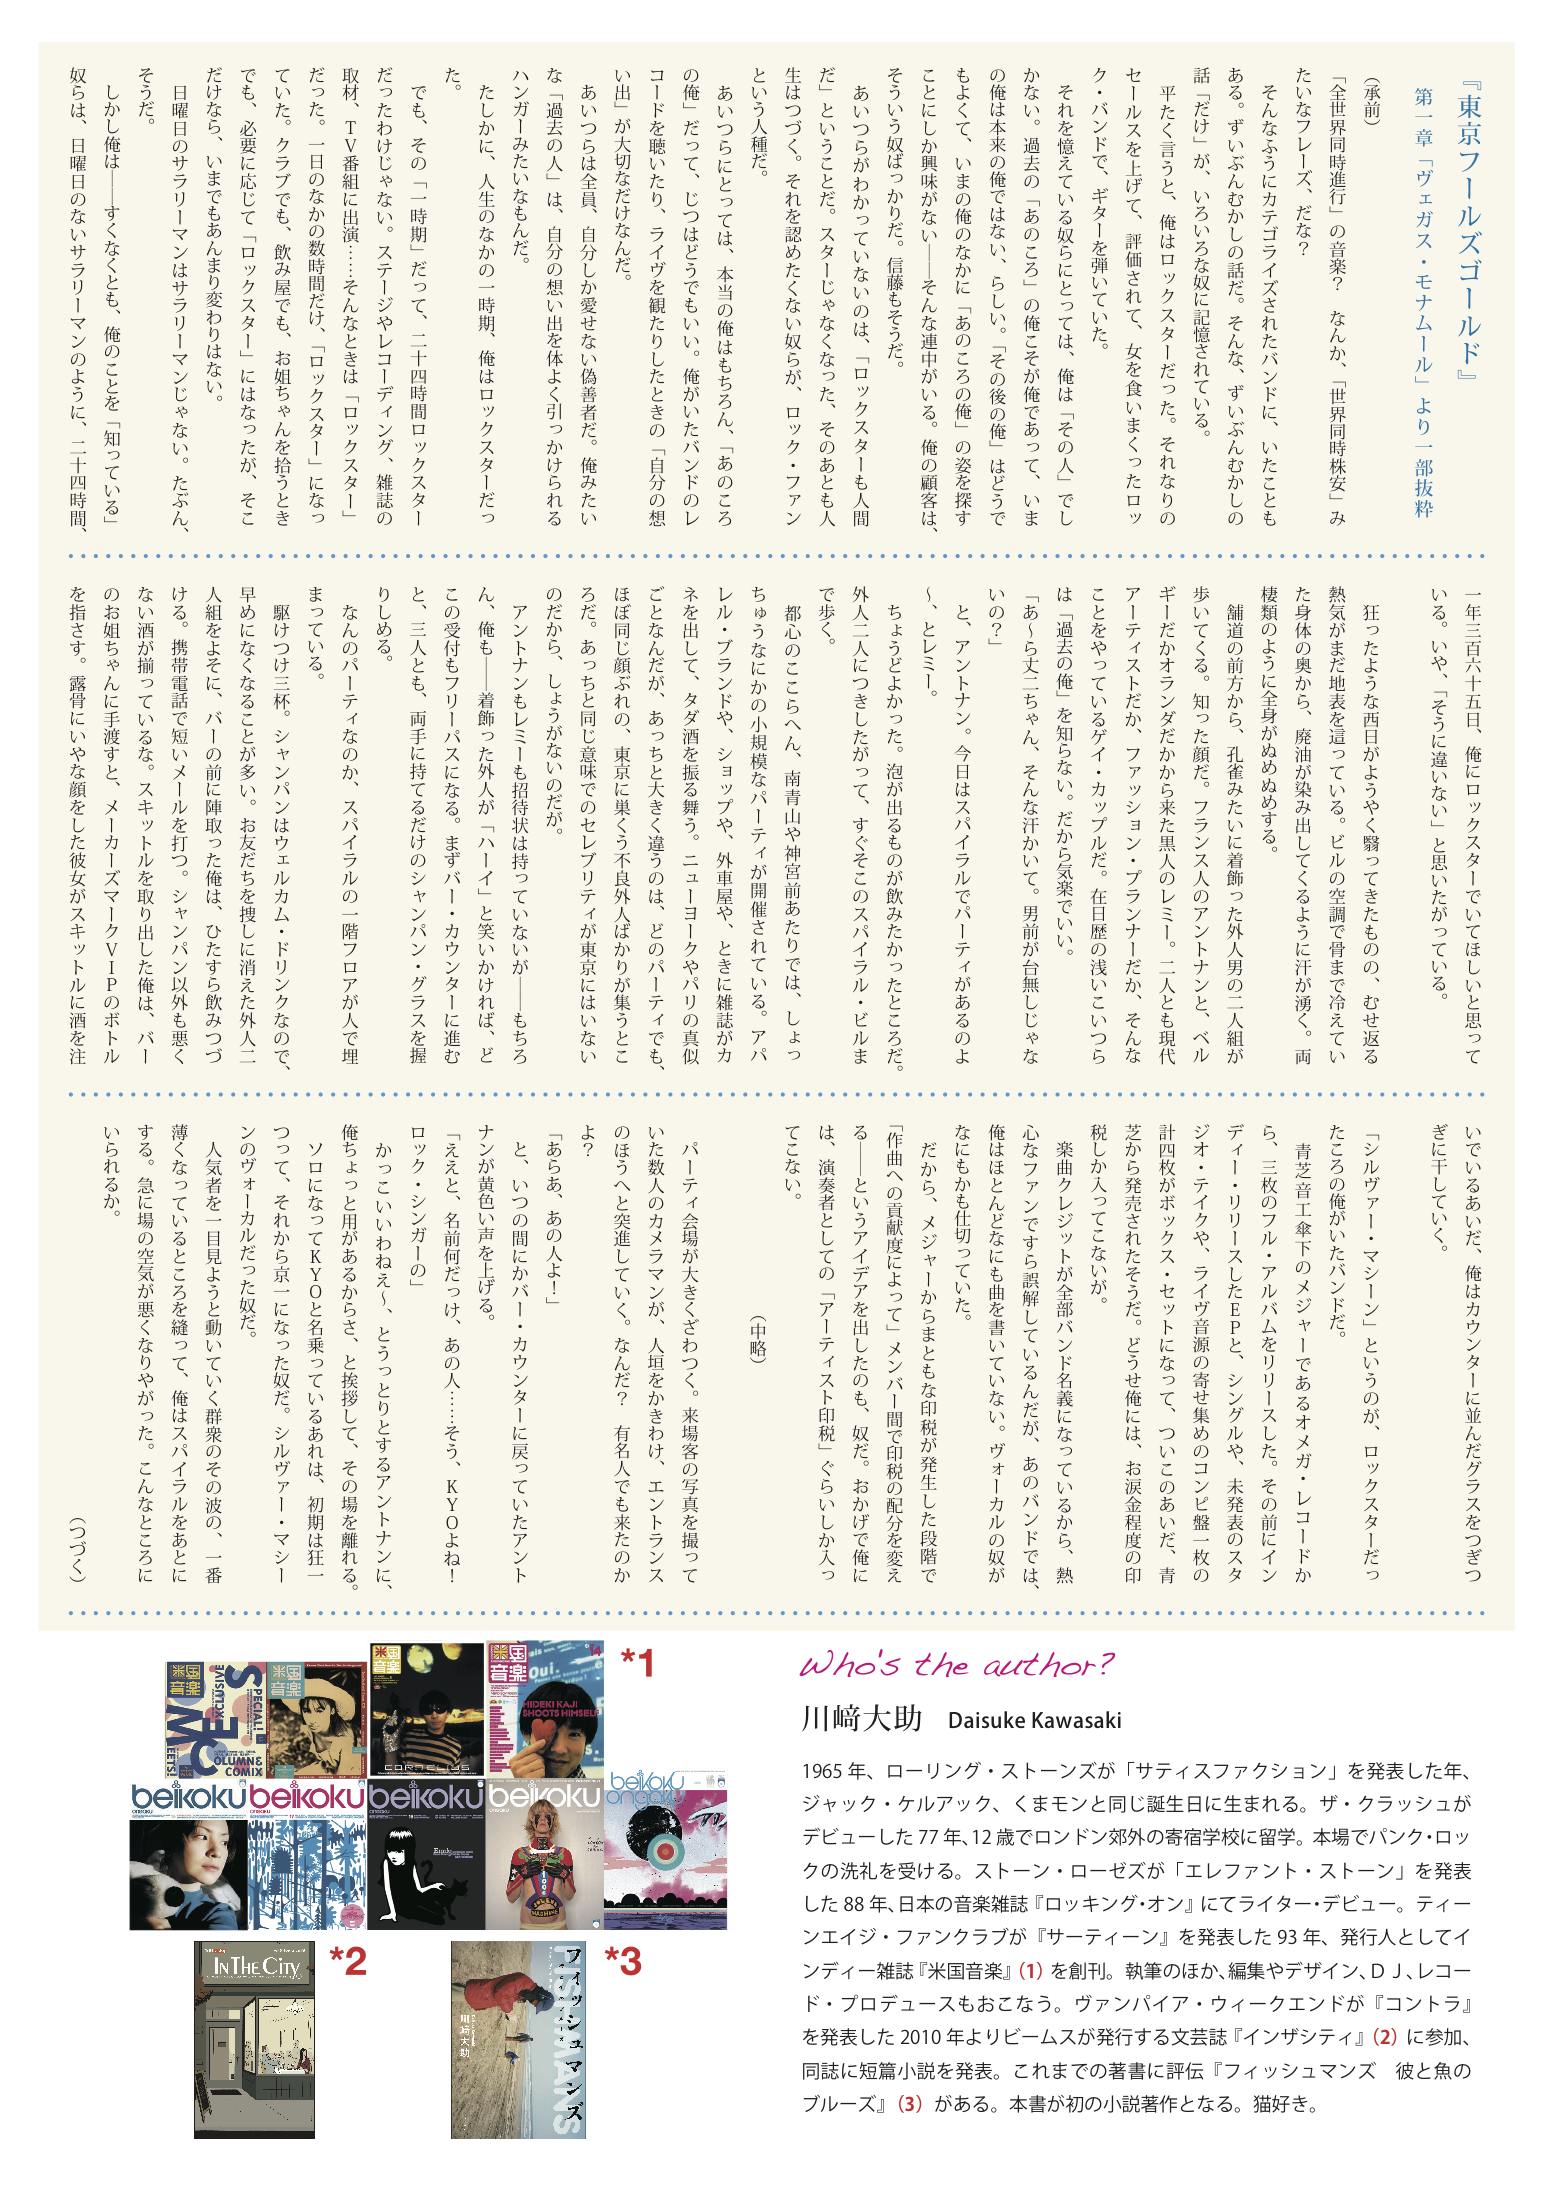 http://www.kawade.co.jp/news/Flyer%E8%A3%8F01.jpg